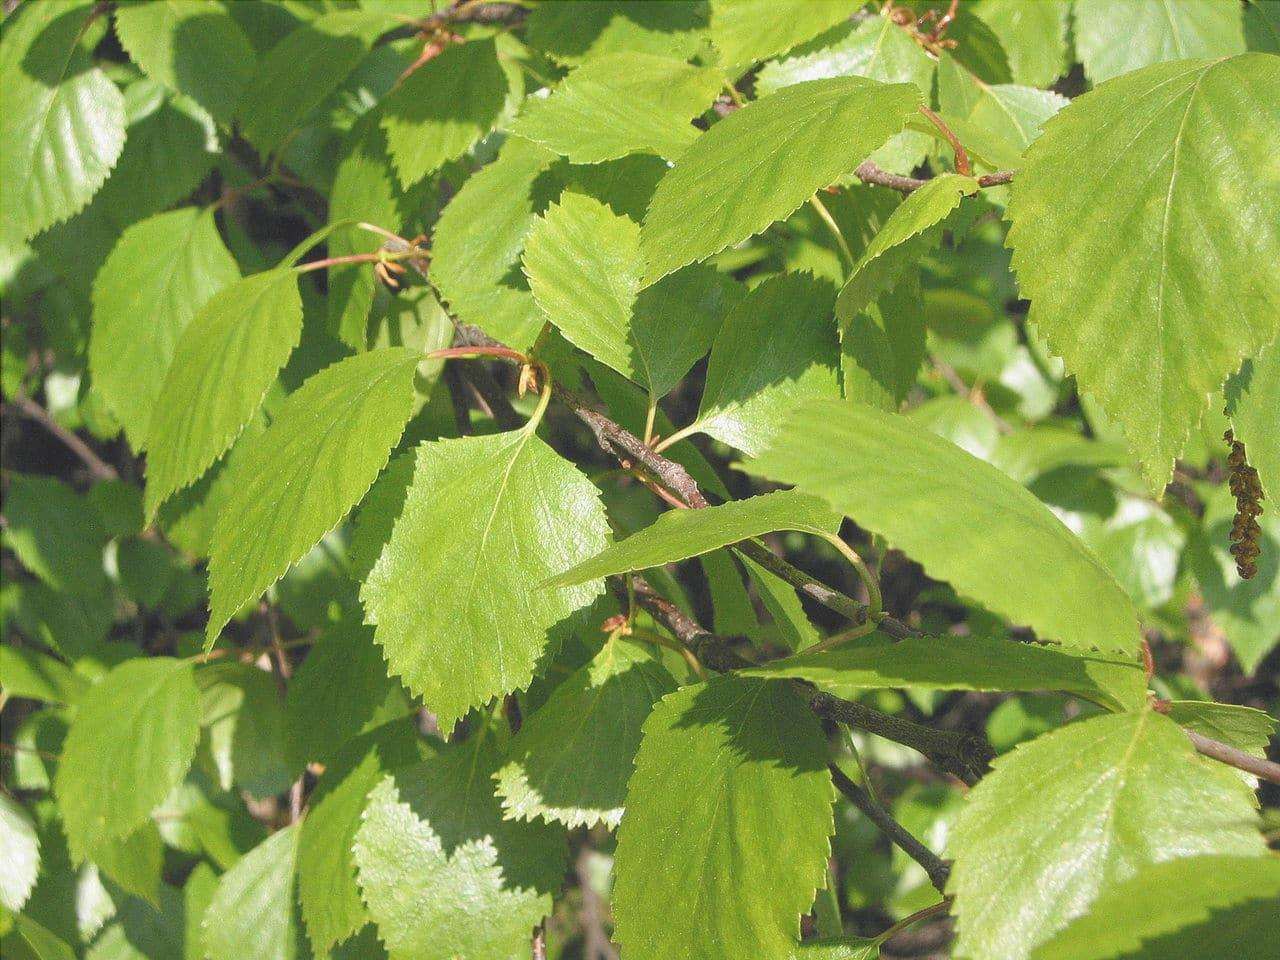 Le foglie di Betula pubescens sono verdi.